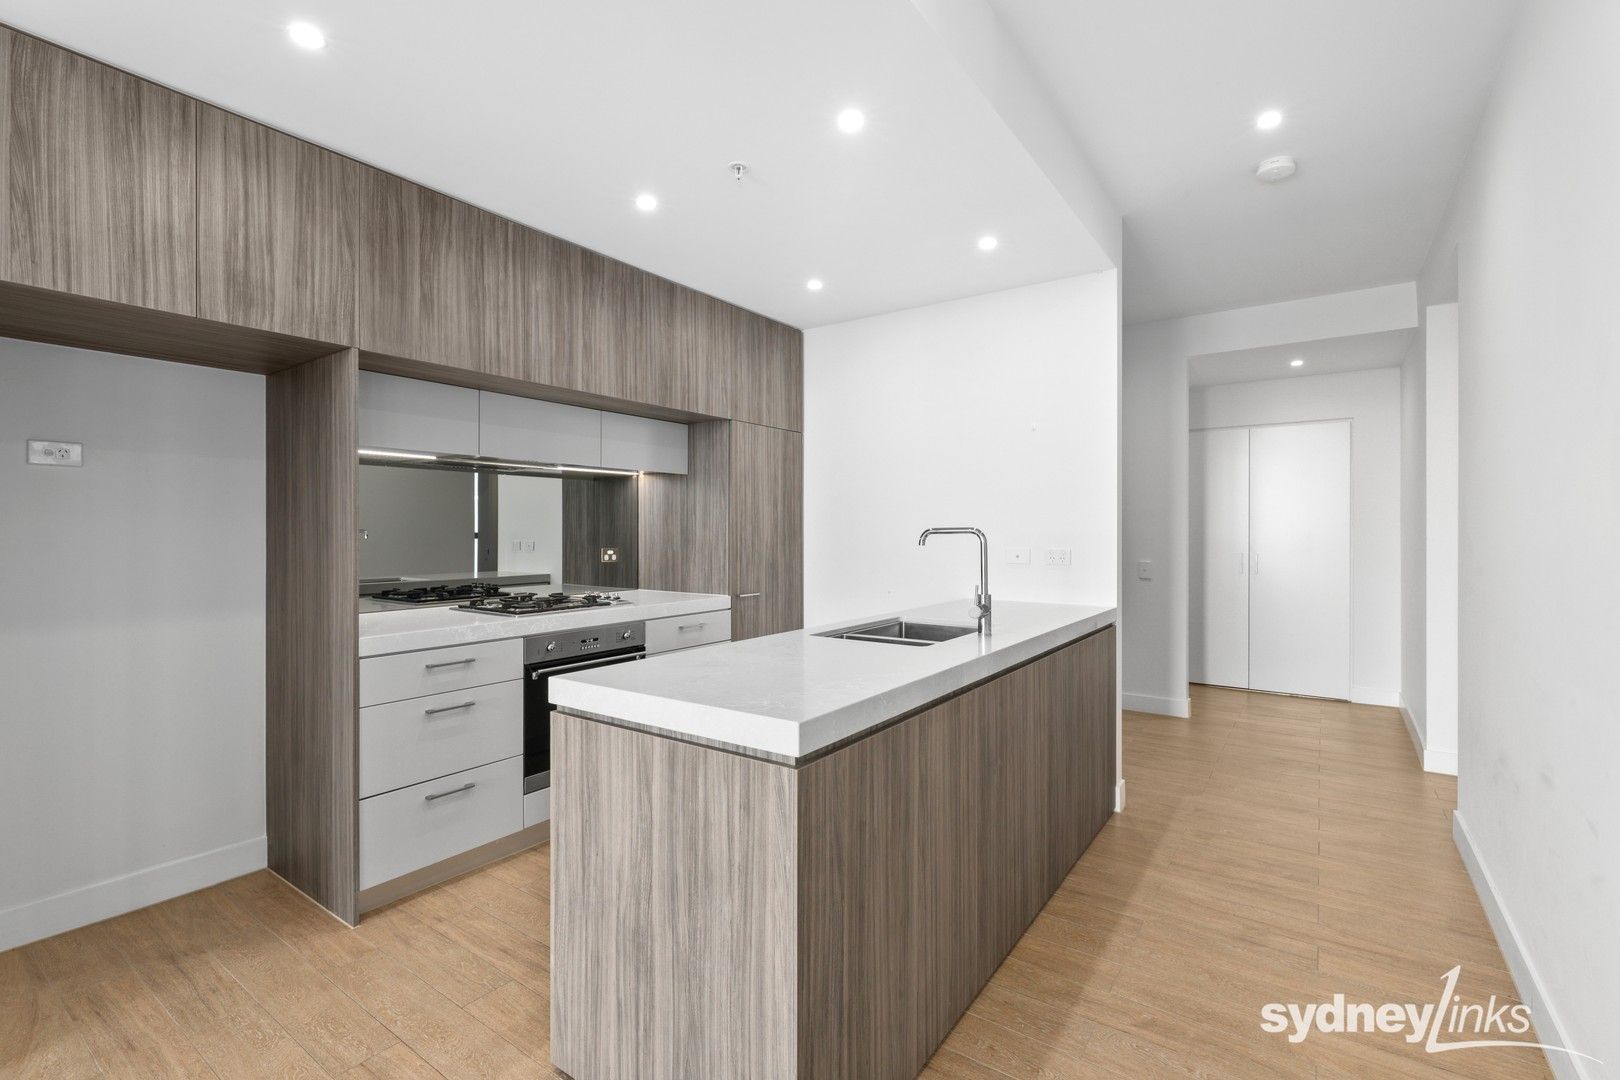 2 bedrooms Apartment / Unit / Flat in D604/1-17 Delhi Road Street NORTH RYDE NSW, 2113